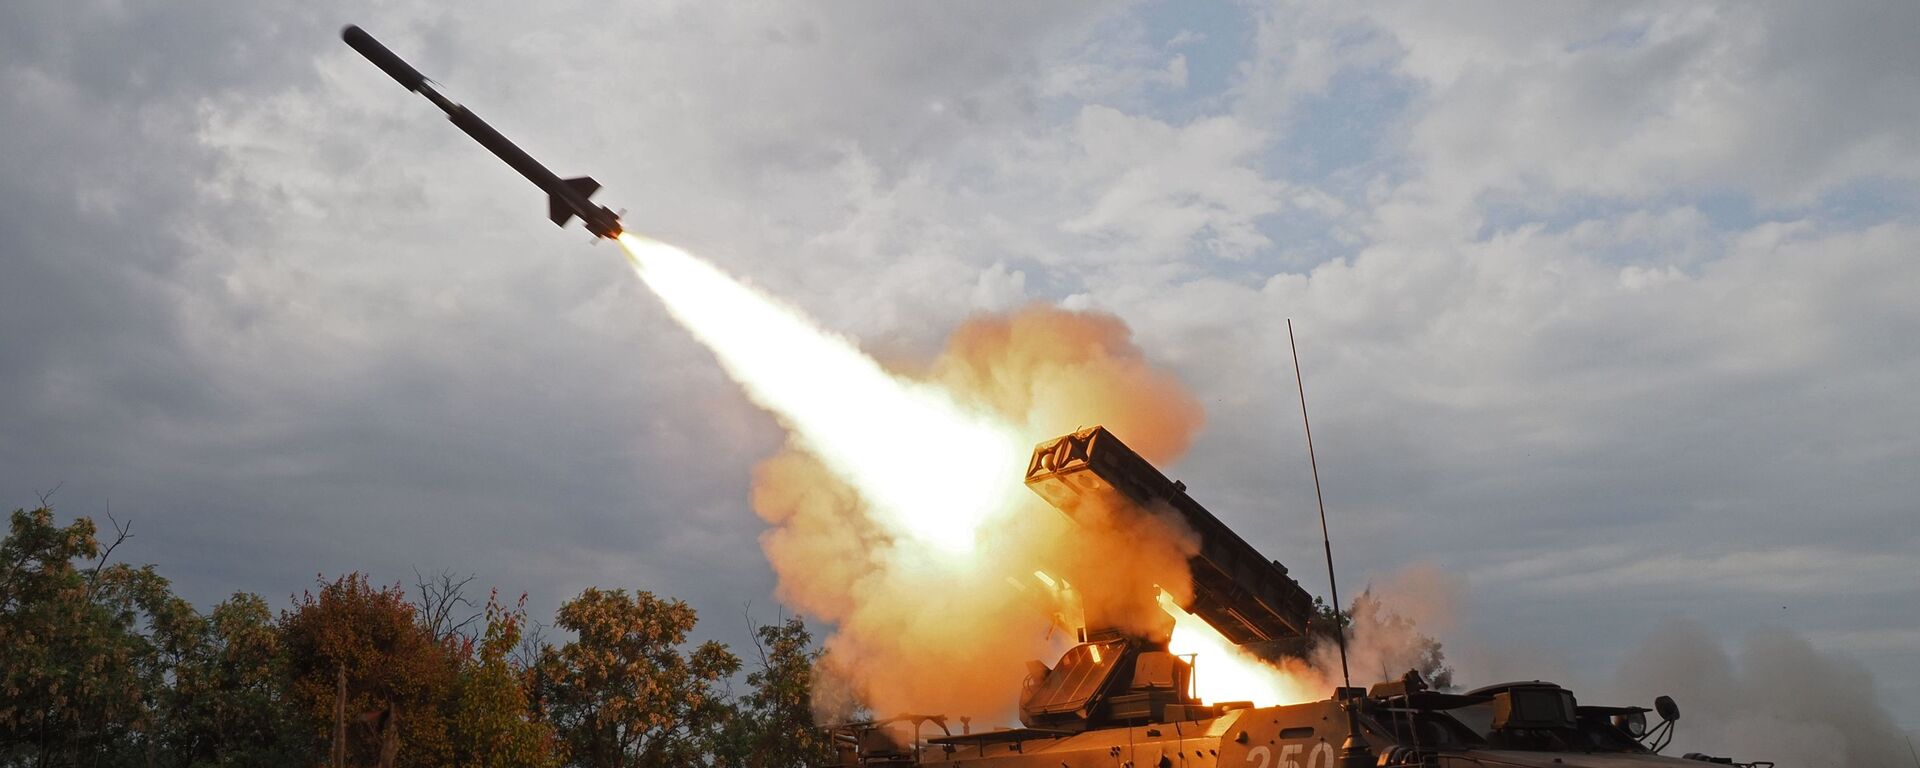 Cú phóng hệ thống tên lửa phòng không Strela-10 tại cuộc thi toàn quân Bầu trời trong lành 2018 - Sputnik Việt Nam, 1920, 14.12.2020